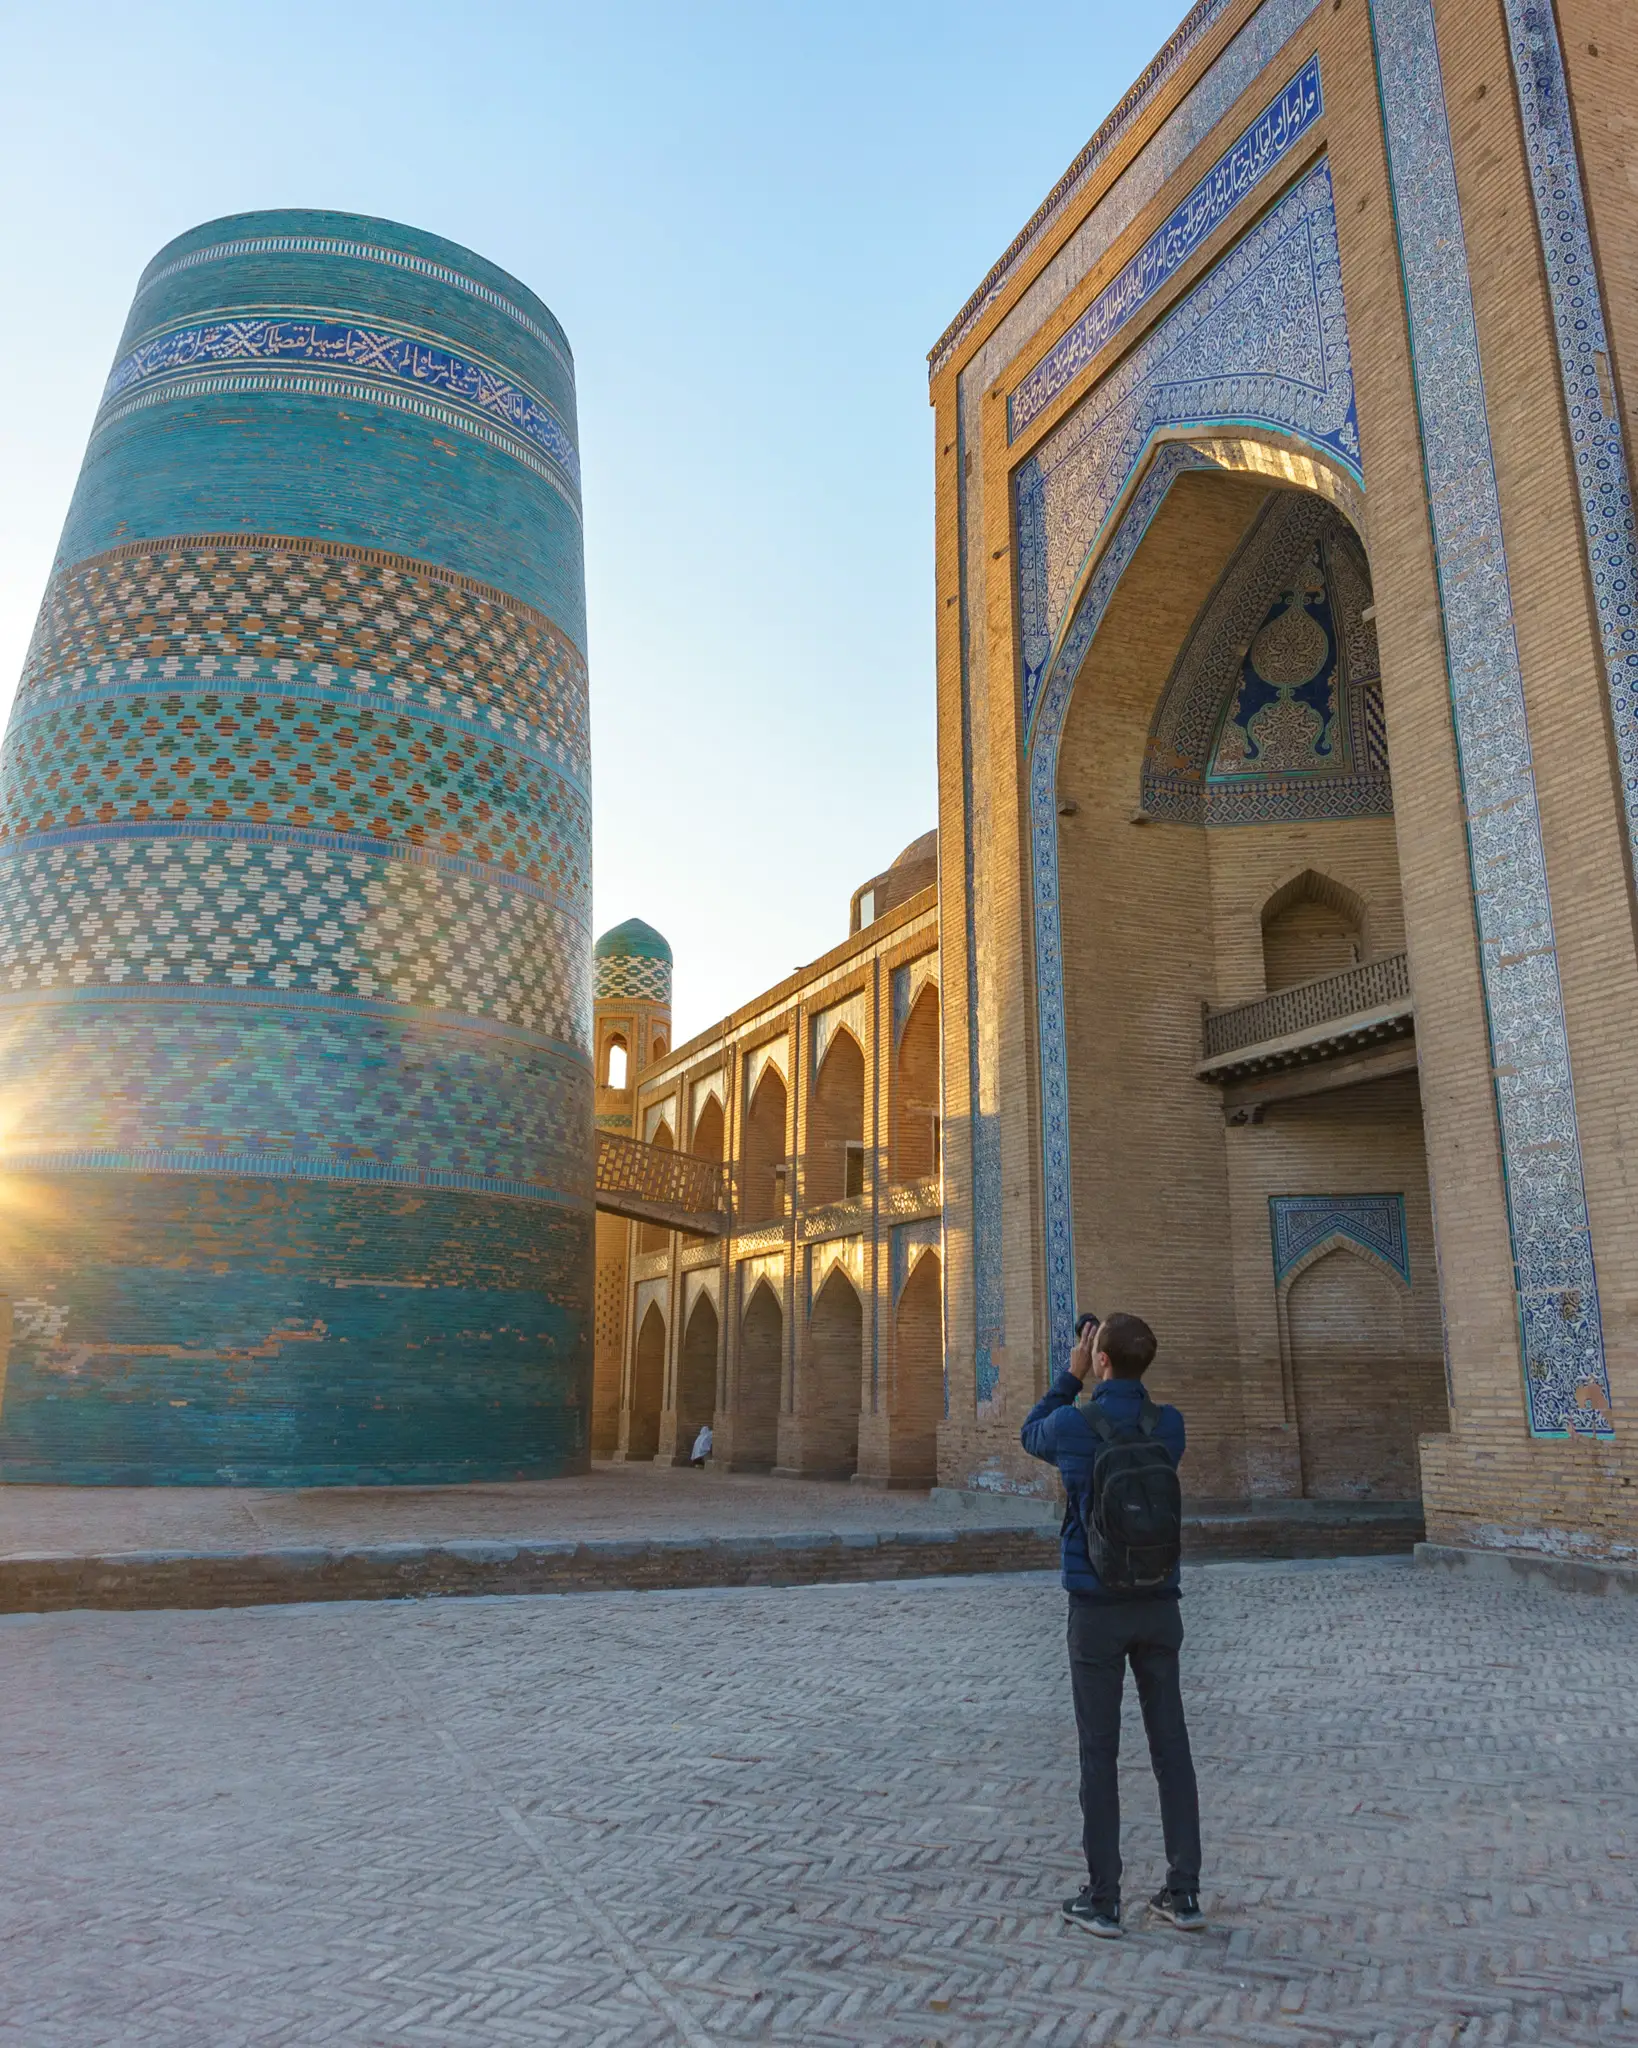 Sunrise in the historical city of Khiva